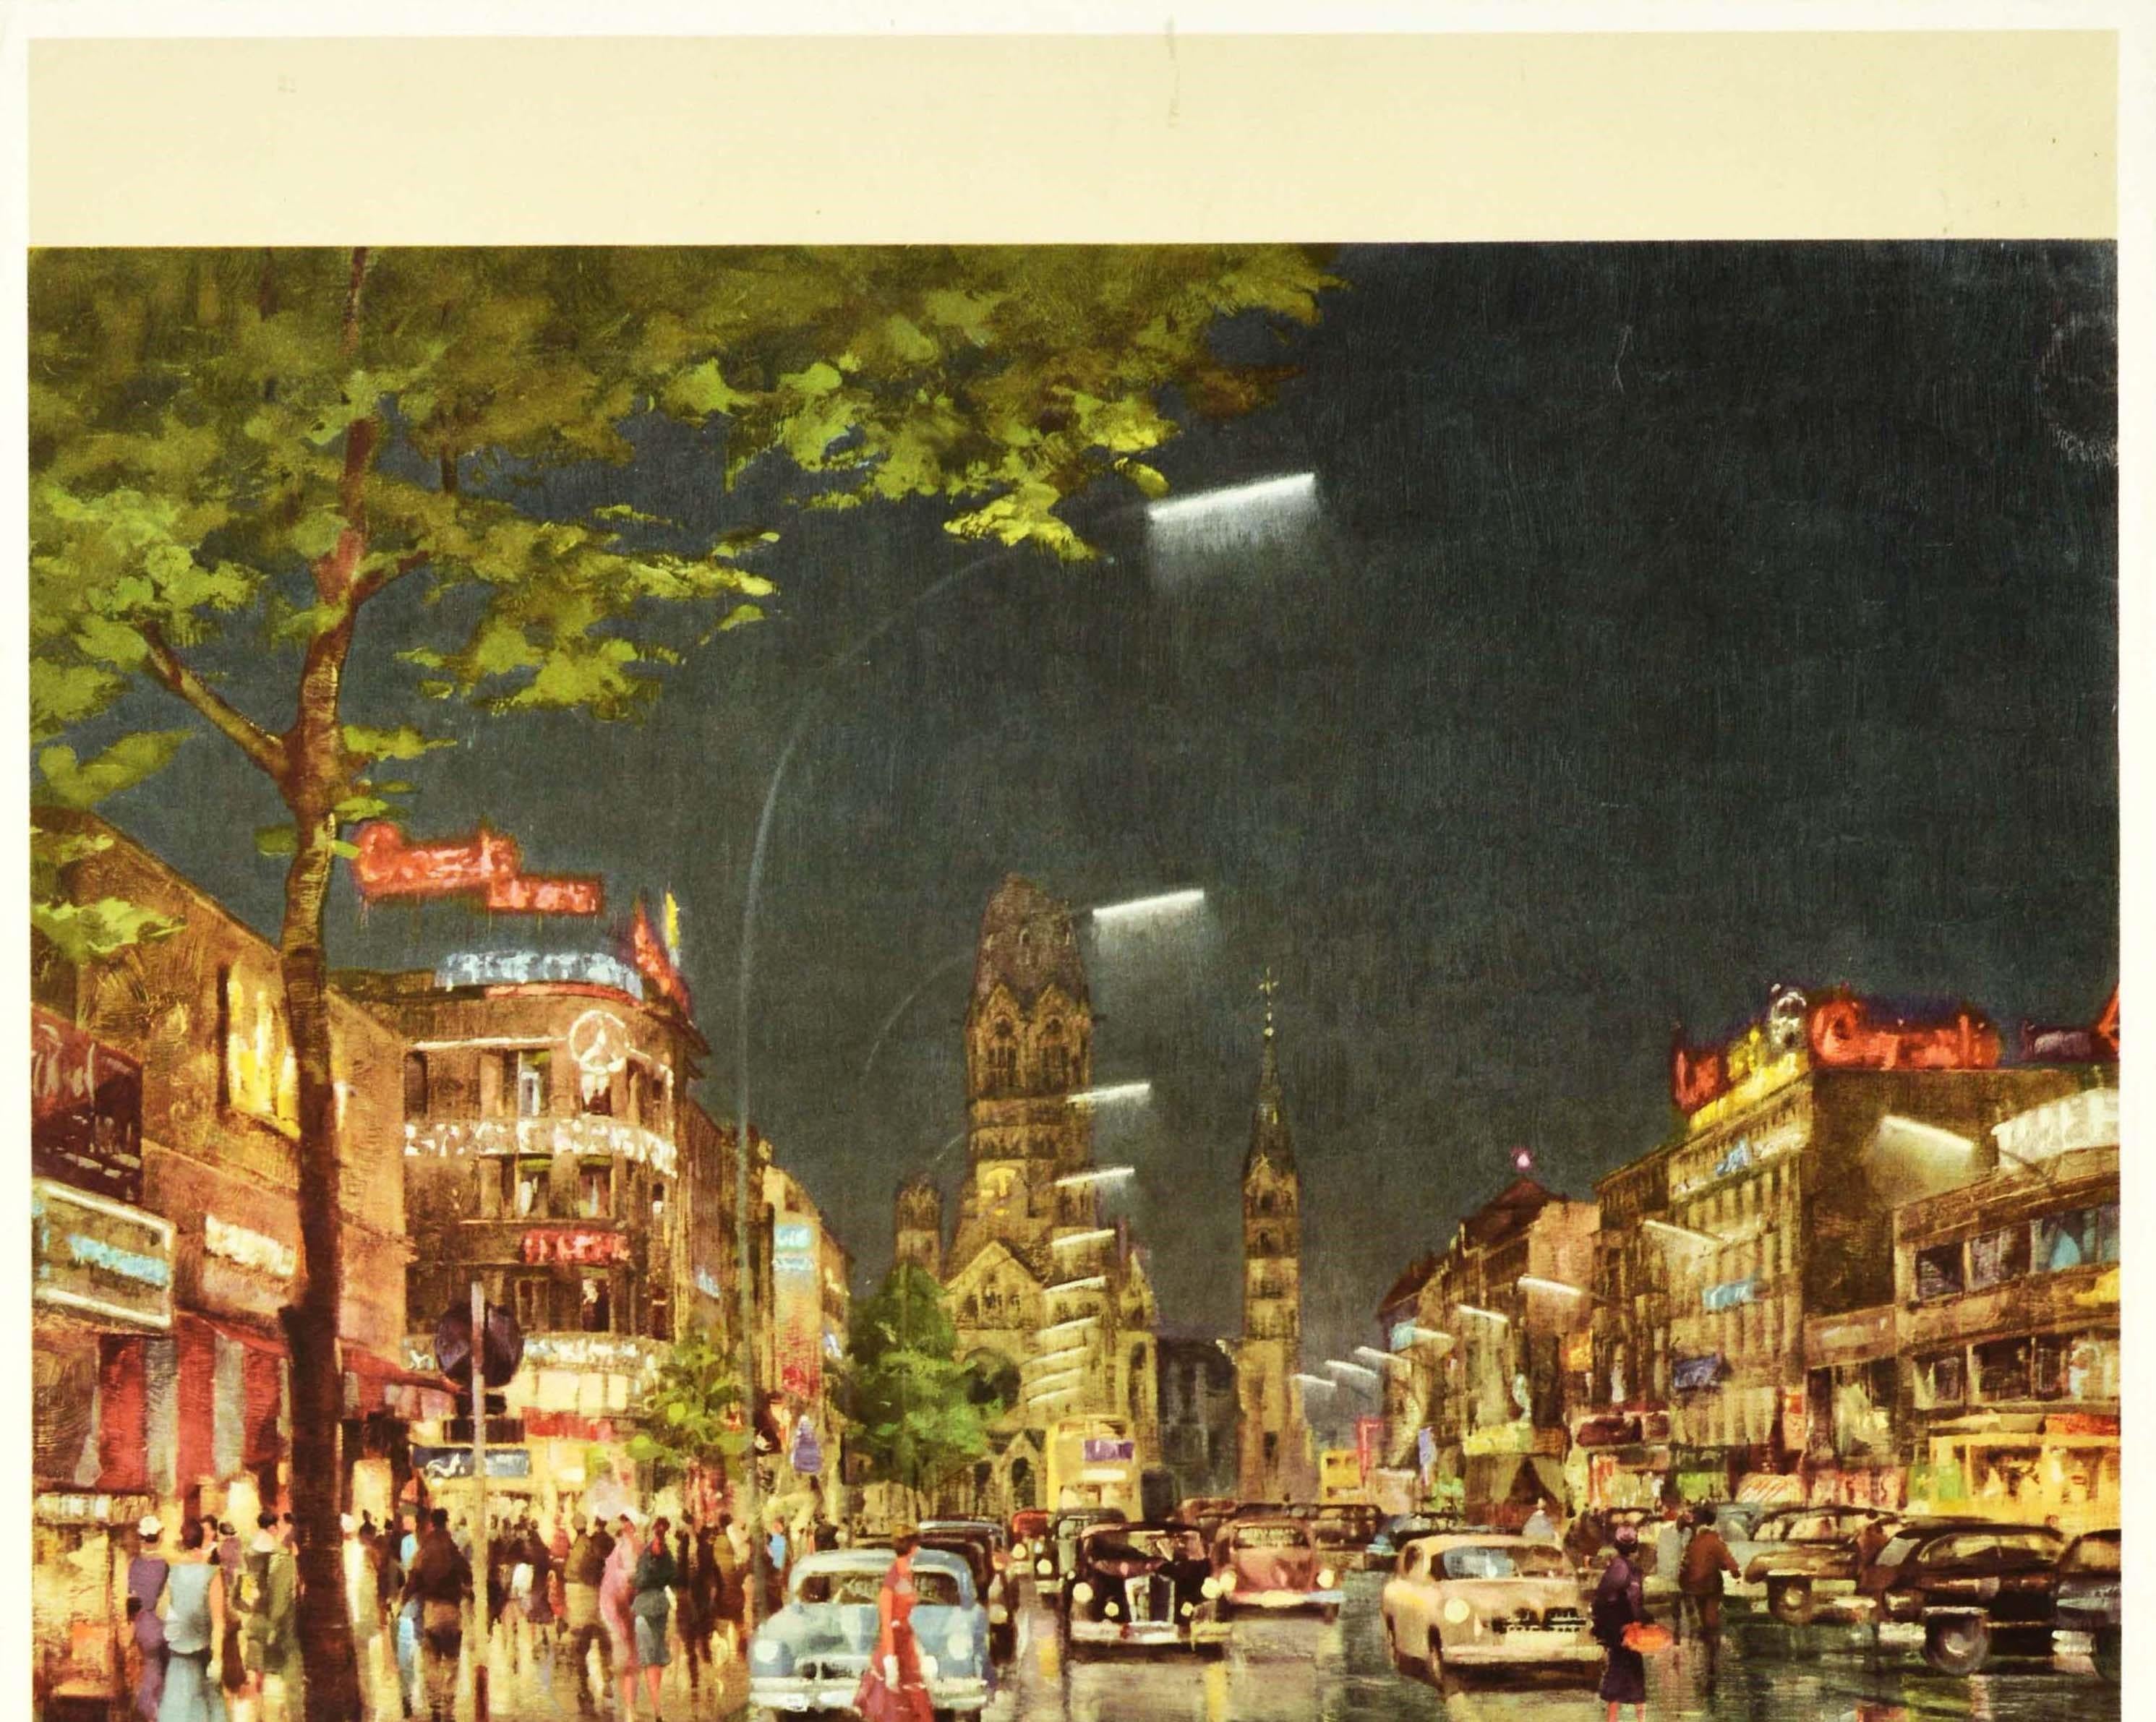 Original Vintage Berlin Travel Poster Art Kurfurstendamm Kaiser Wilhelm Memorial - Print by Reinhard Bartsch